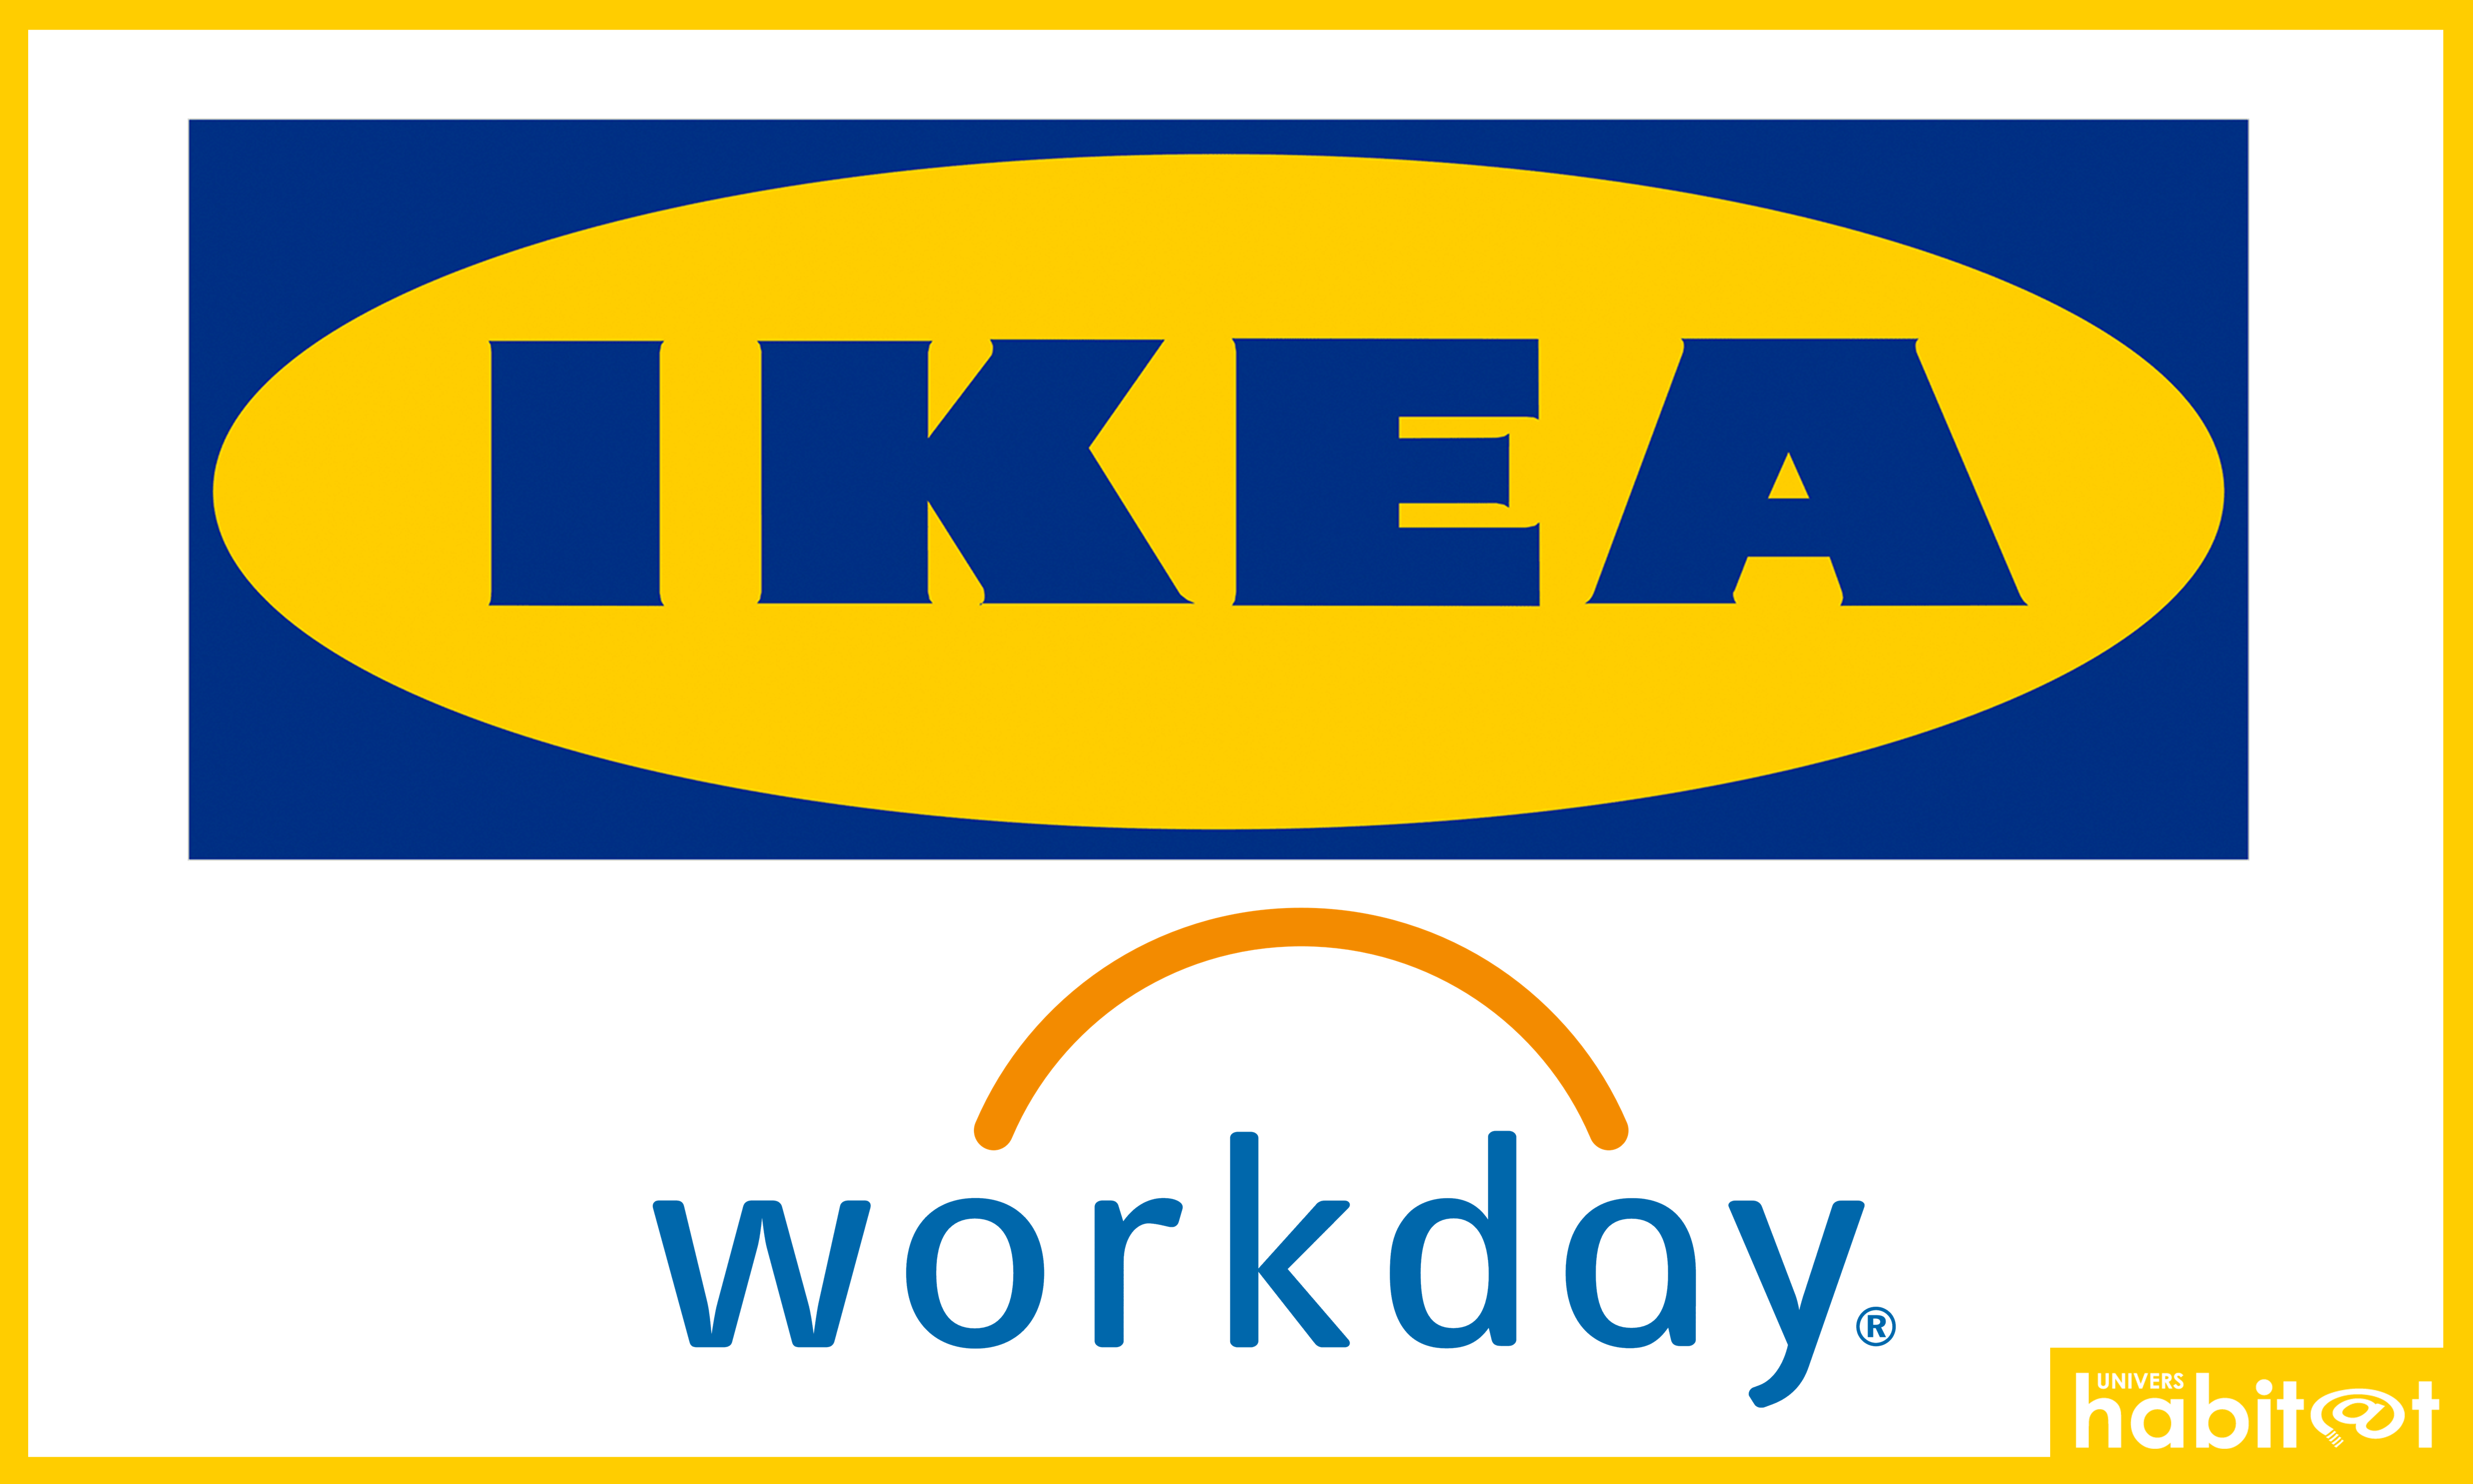 Ikea mise sur l’expérience de ses collaborateurs pour continuer son développement